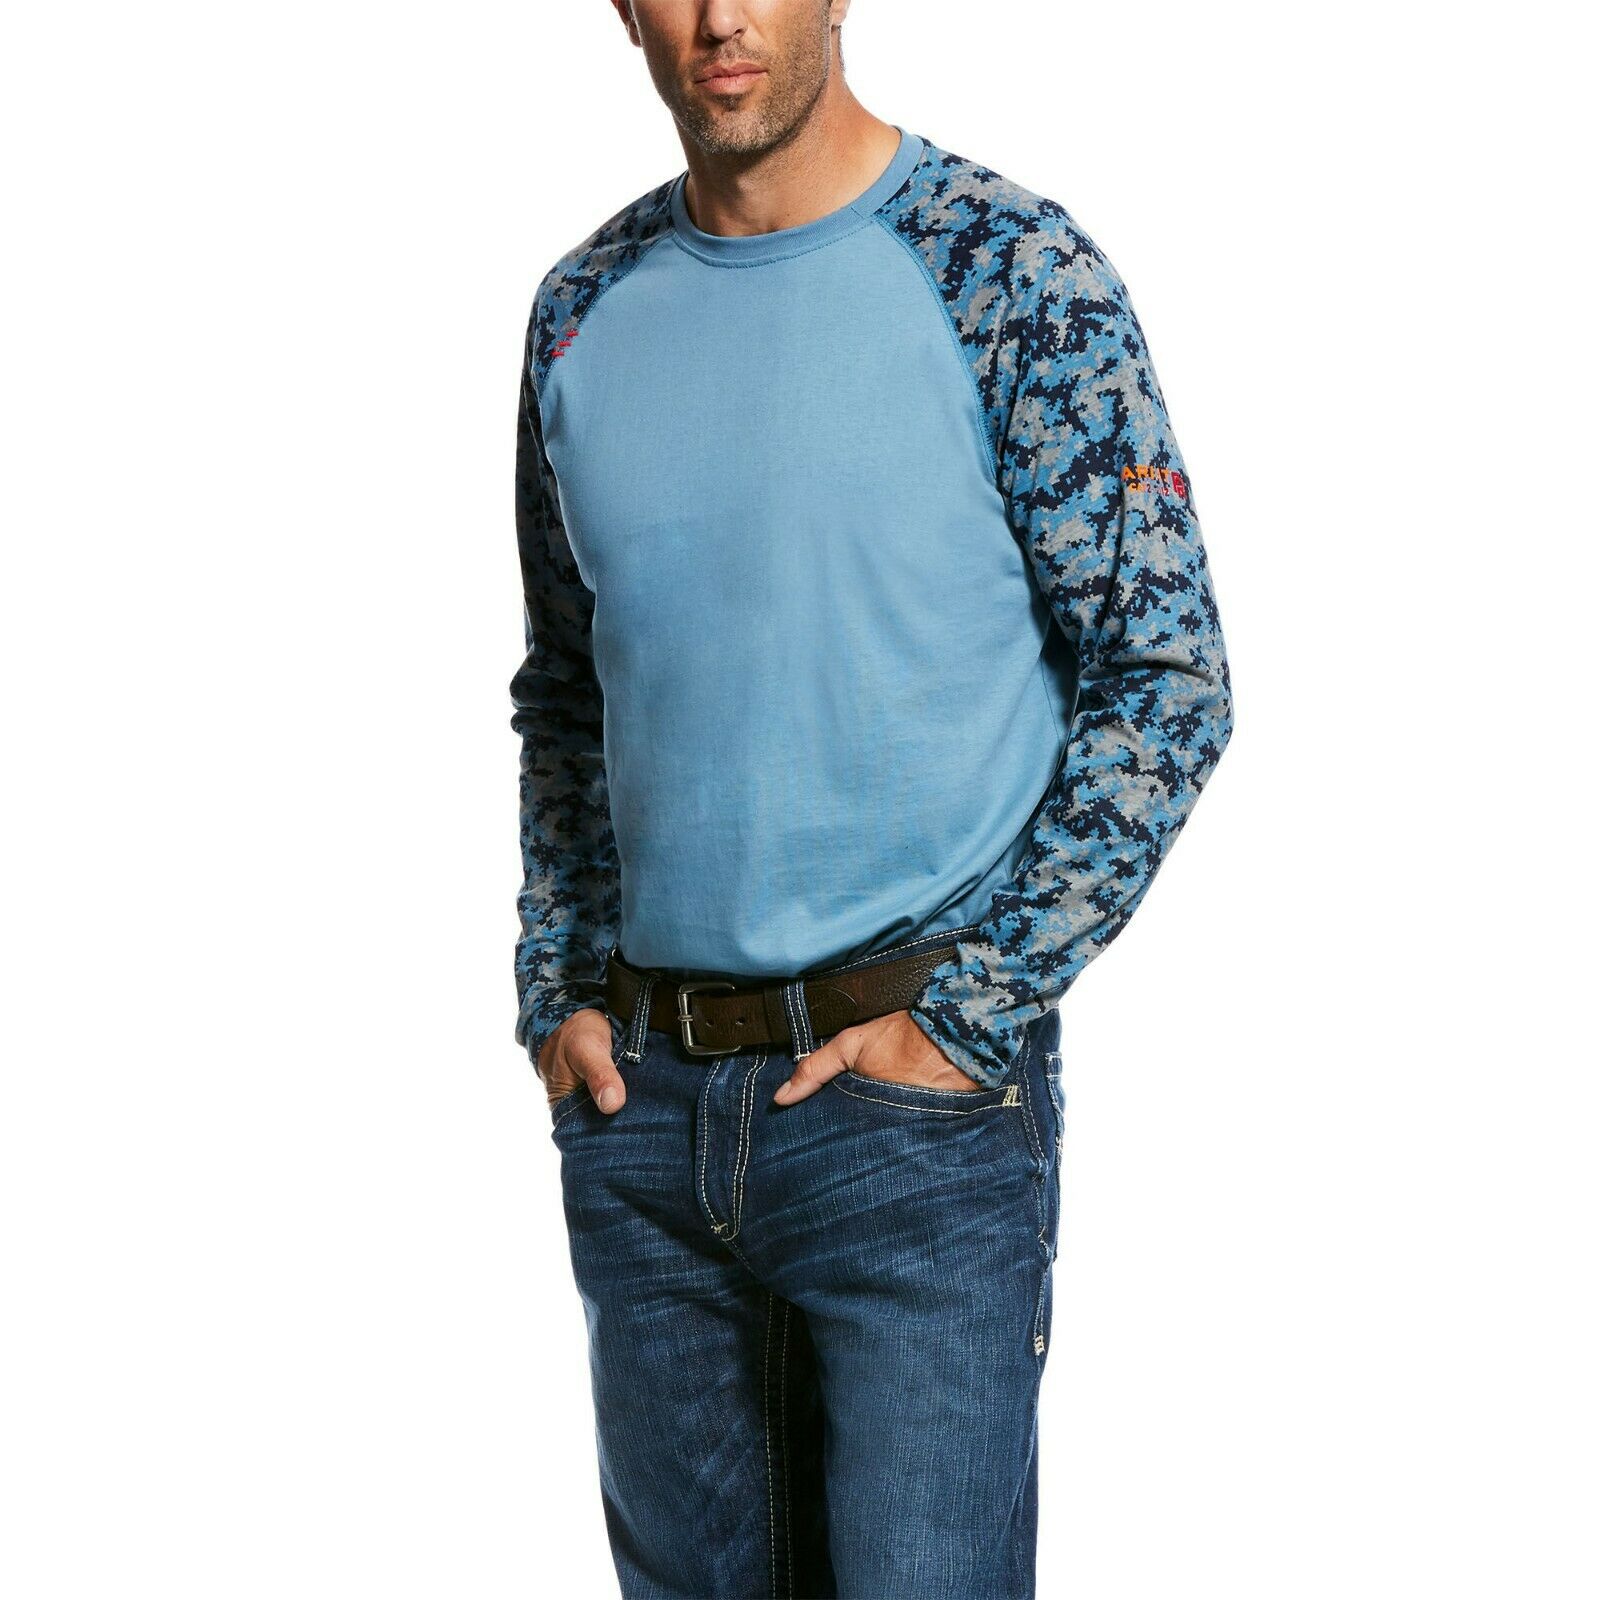 Ariat Men's FR Steel Blue Digi-Camo Baseball Tee Shirt